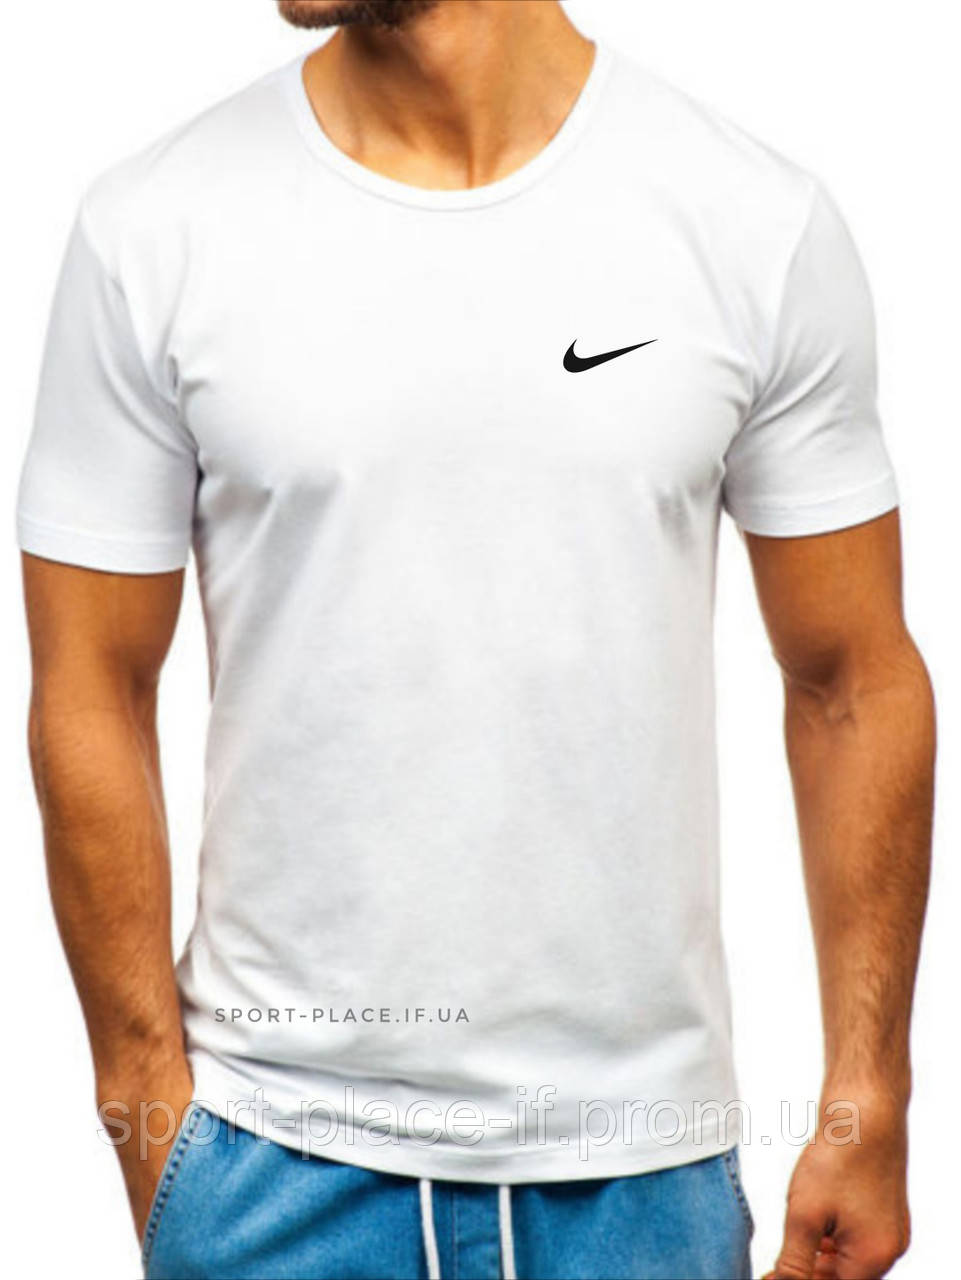 Чоловіча футболка Nike (Найк) біла (маленька емблема) бавовна